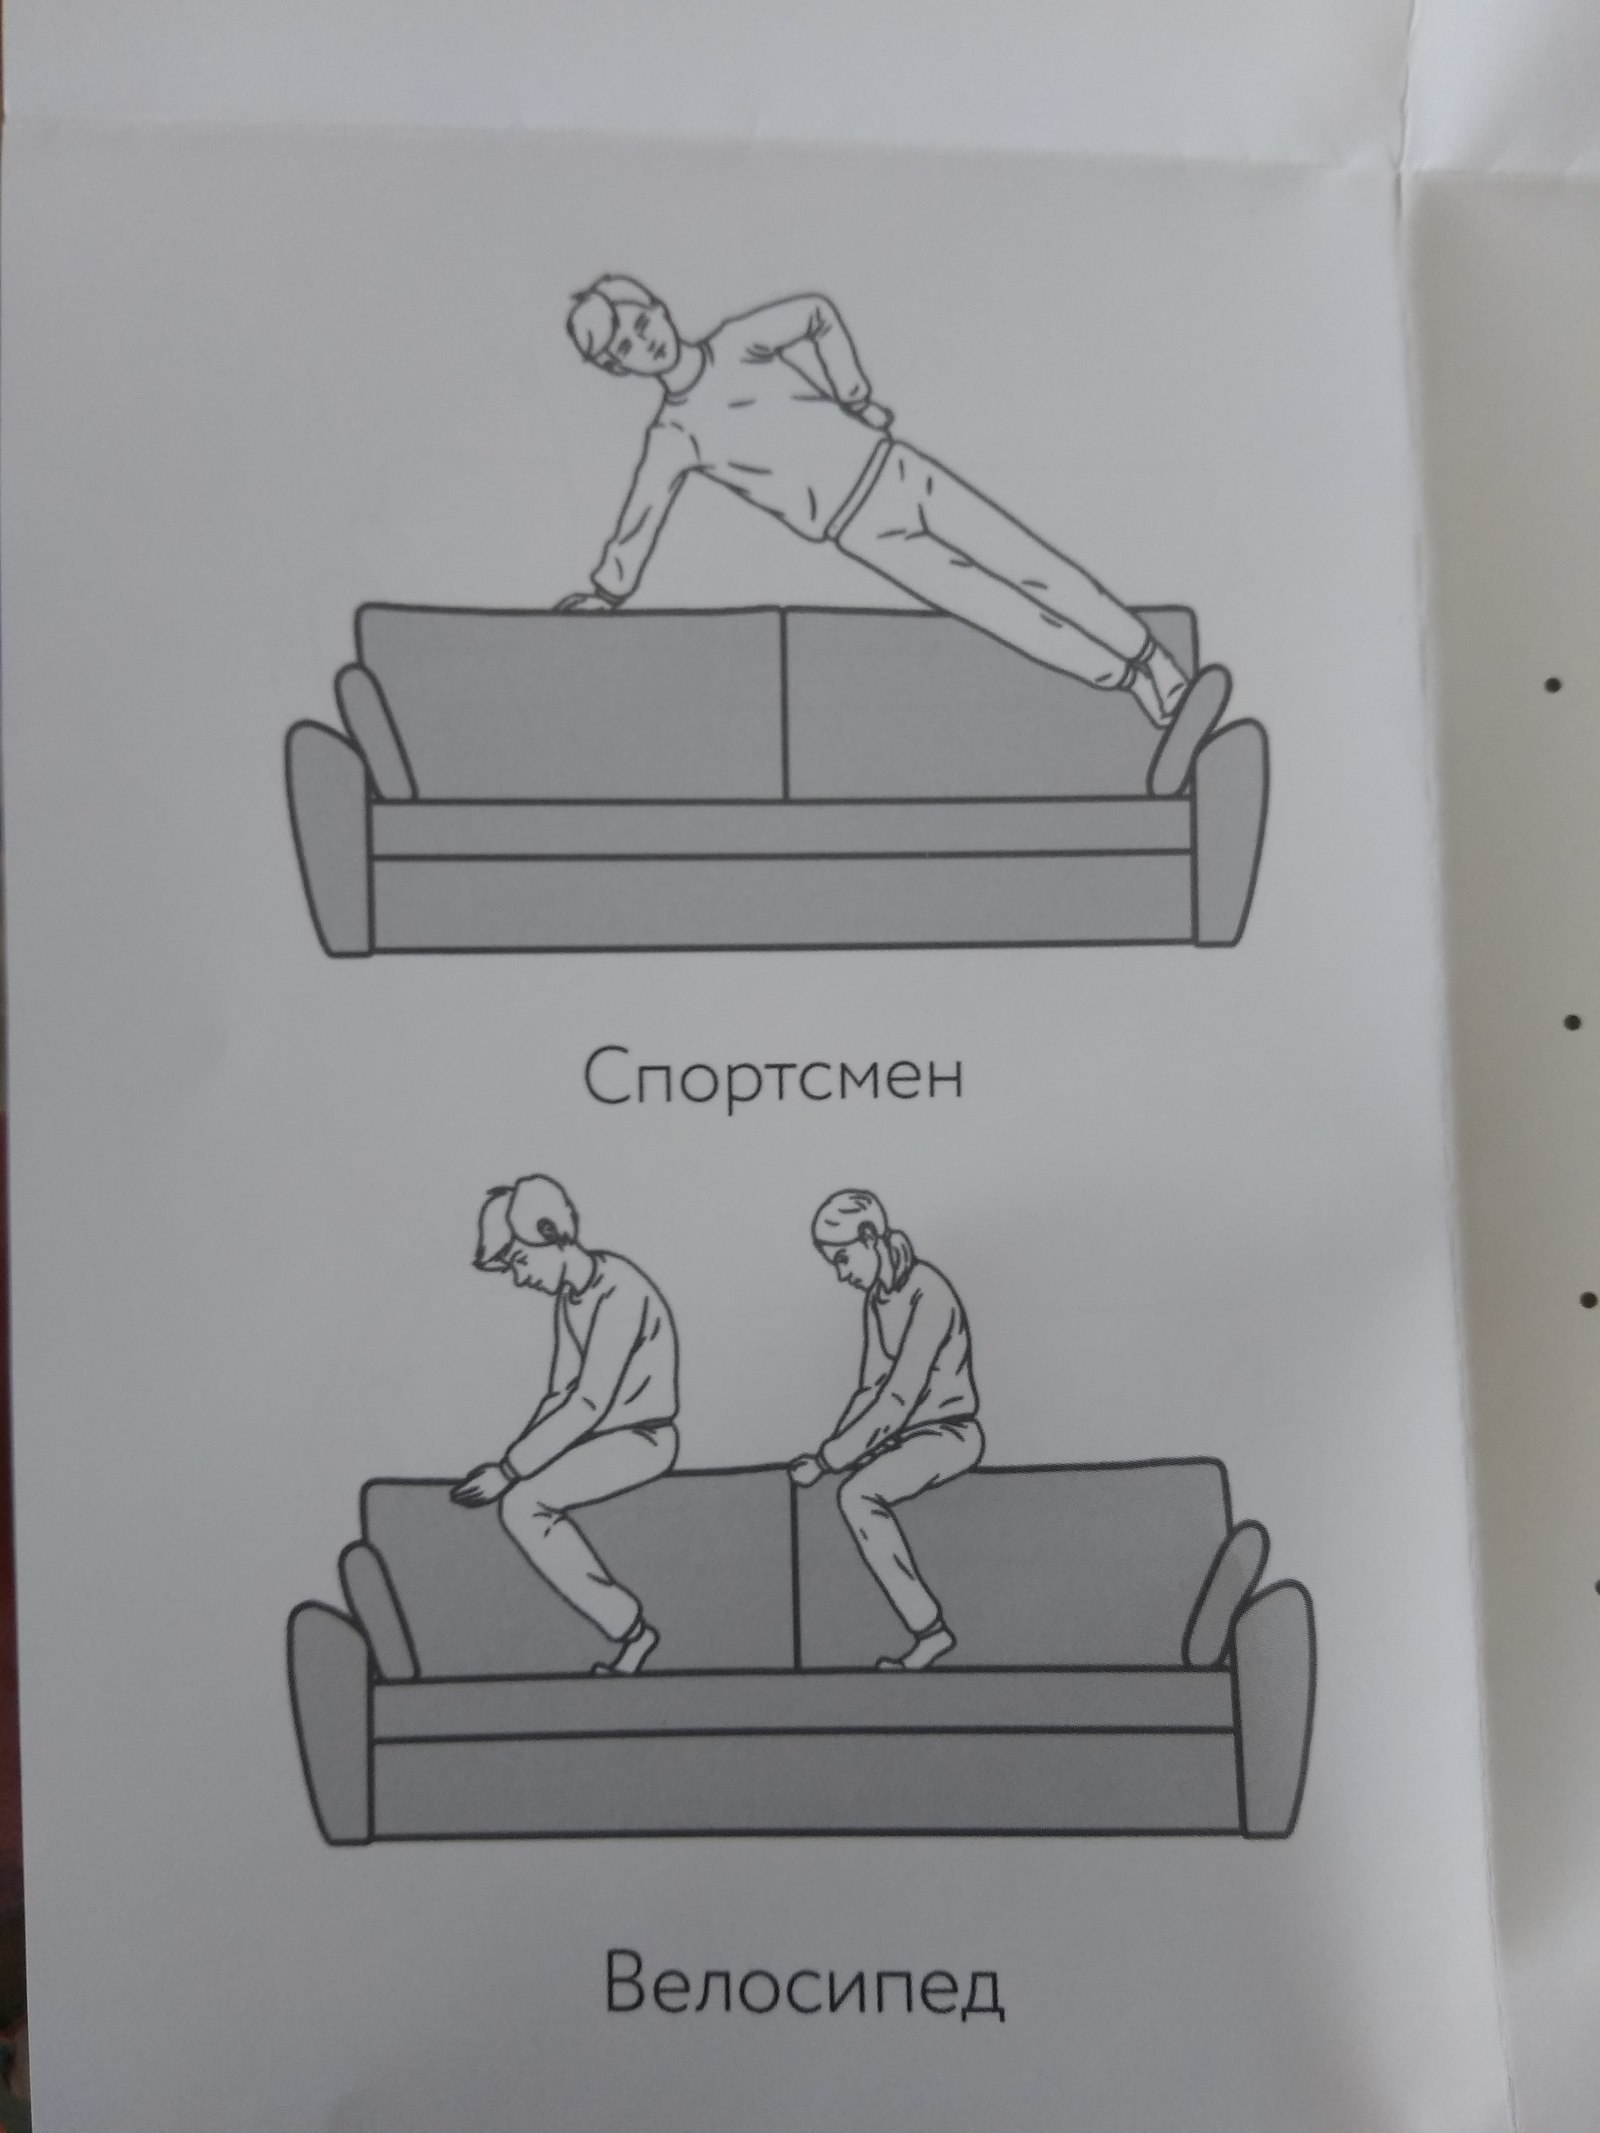 Инструкция по применению дивана